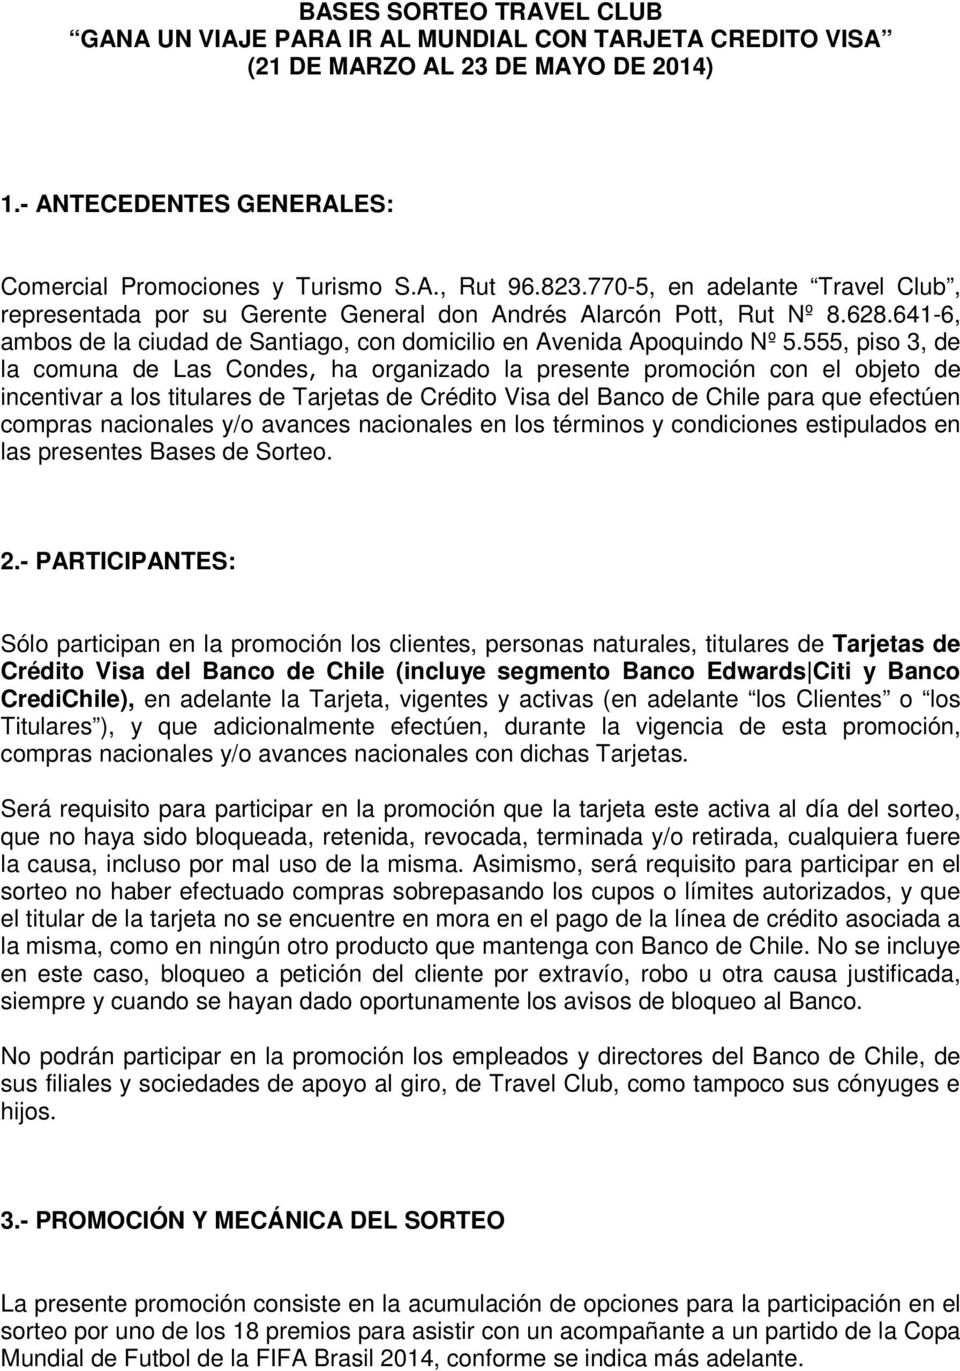 555, piso 3, de la comuna de Las Condes, ha organizado la presente promoción con el objeto de incentivar a los titulares de Tarjetas de Crédito Visa del Banco de Chile para que efectúen compras